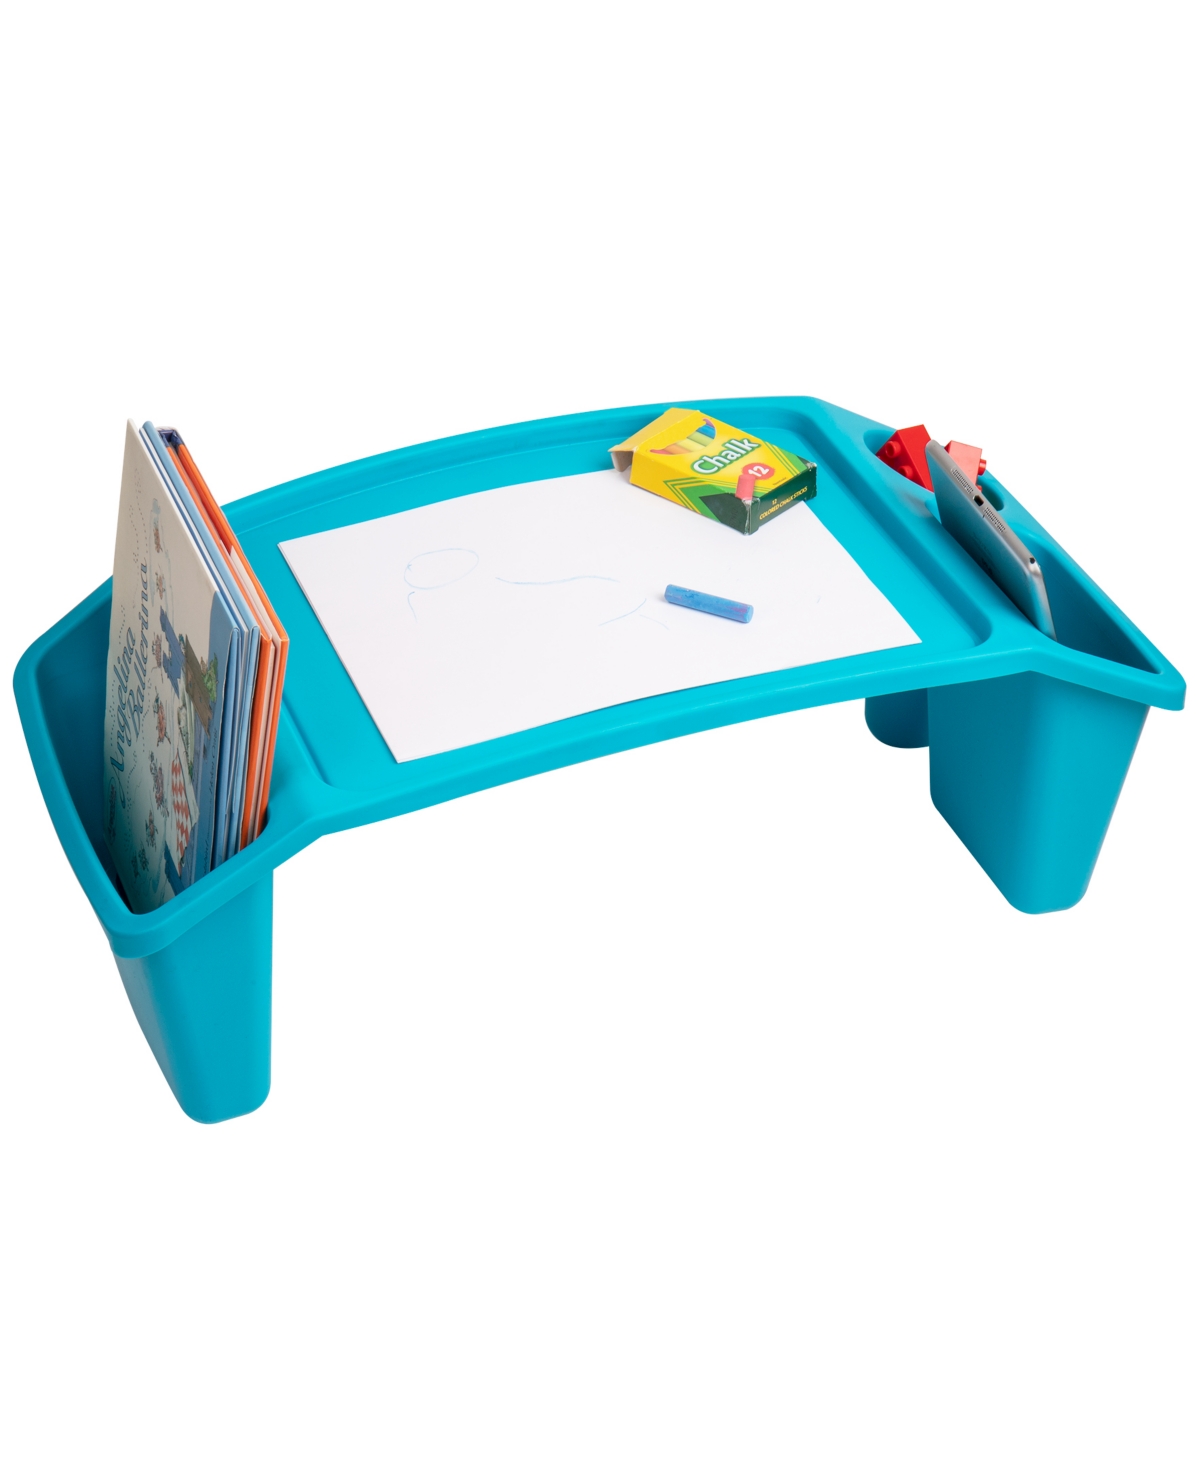 Shop Mind Reader Kids Lap Desk, Freestanding Portable Table With Side Pockets In Blue